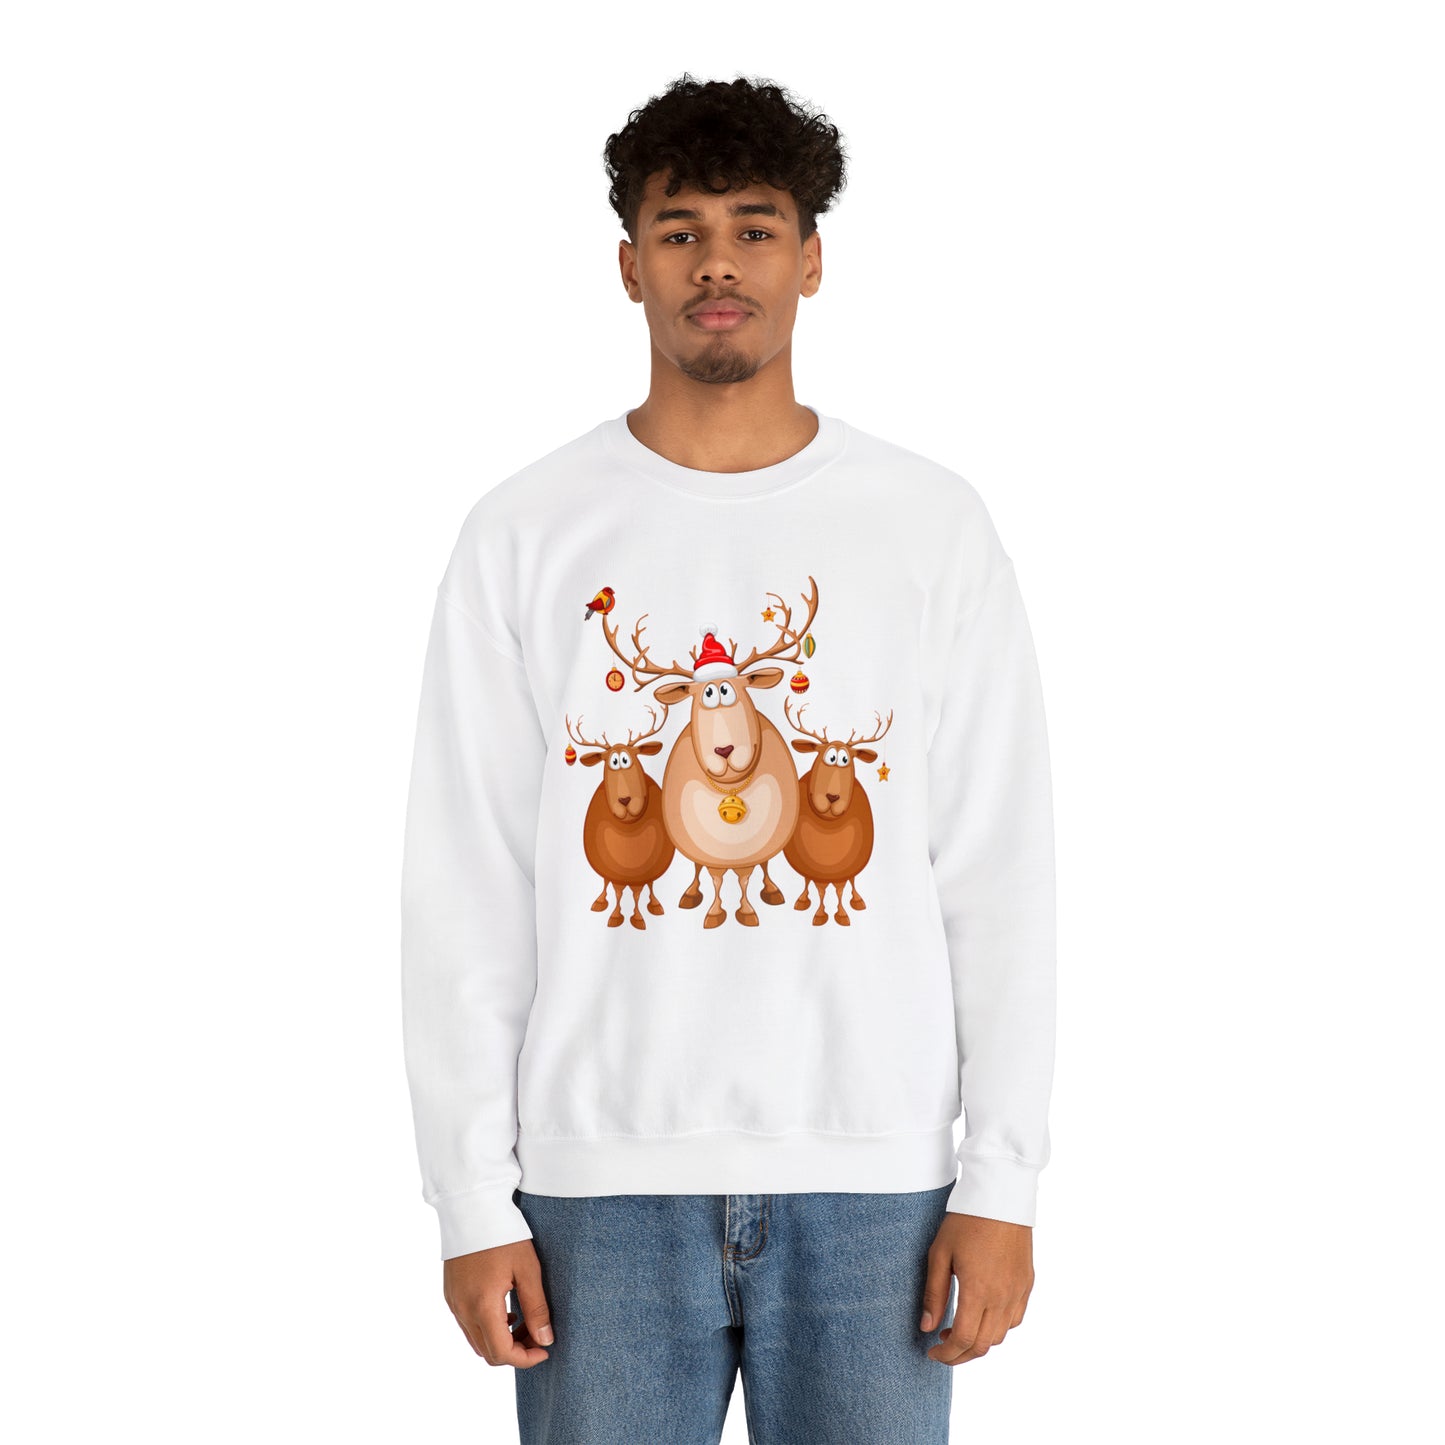 Reindeer Games Crewneck Sweatshirt